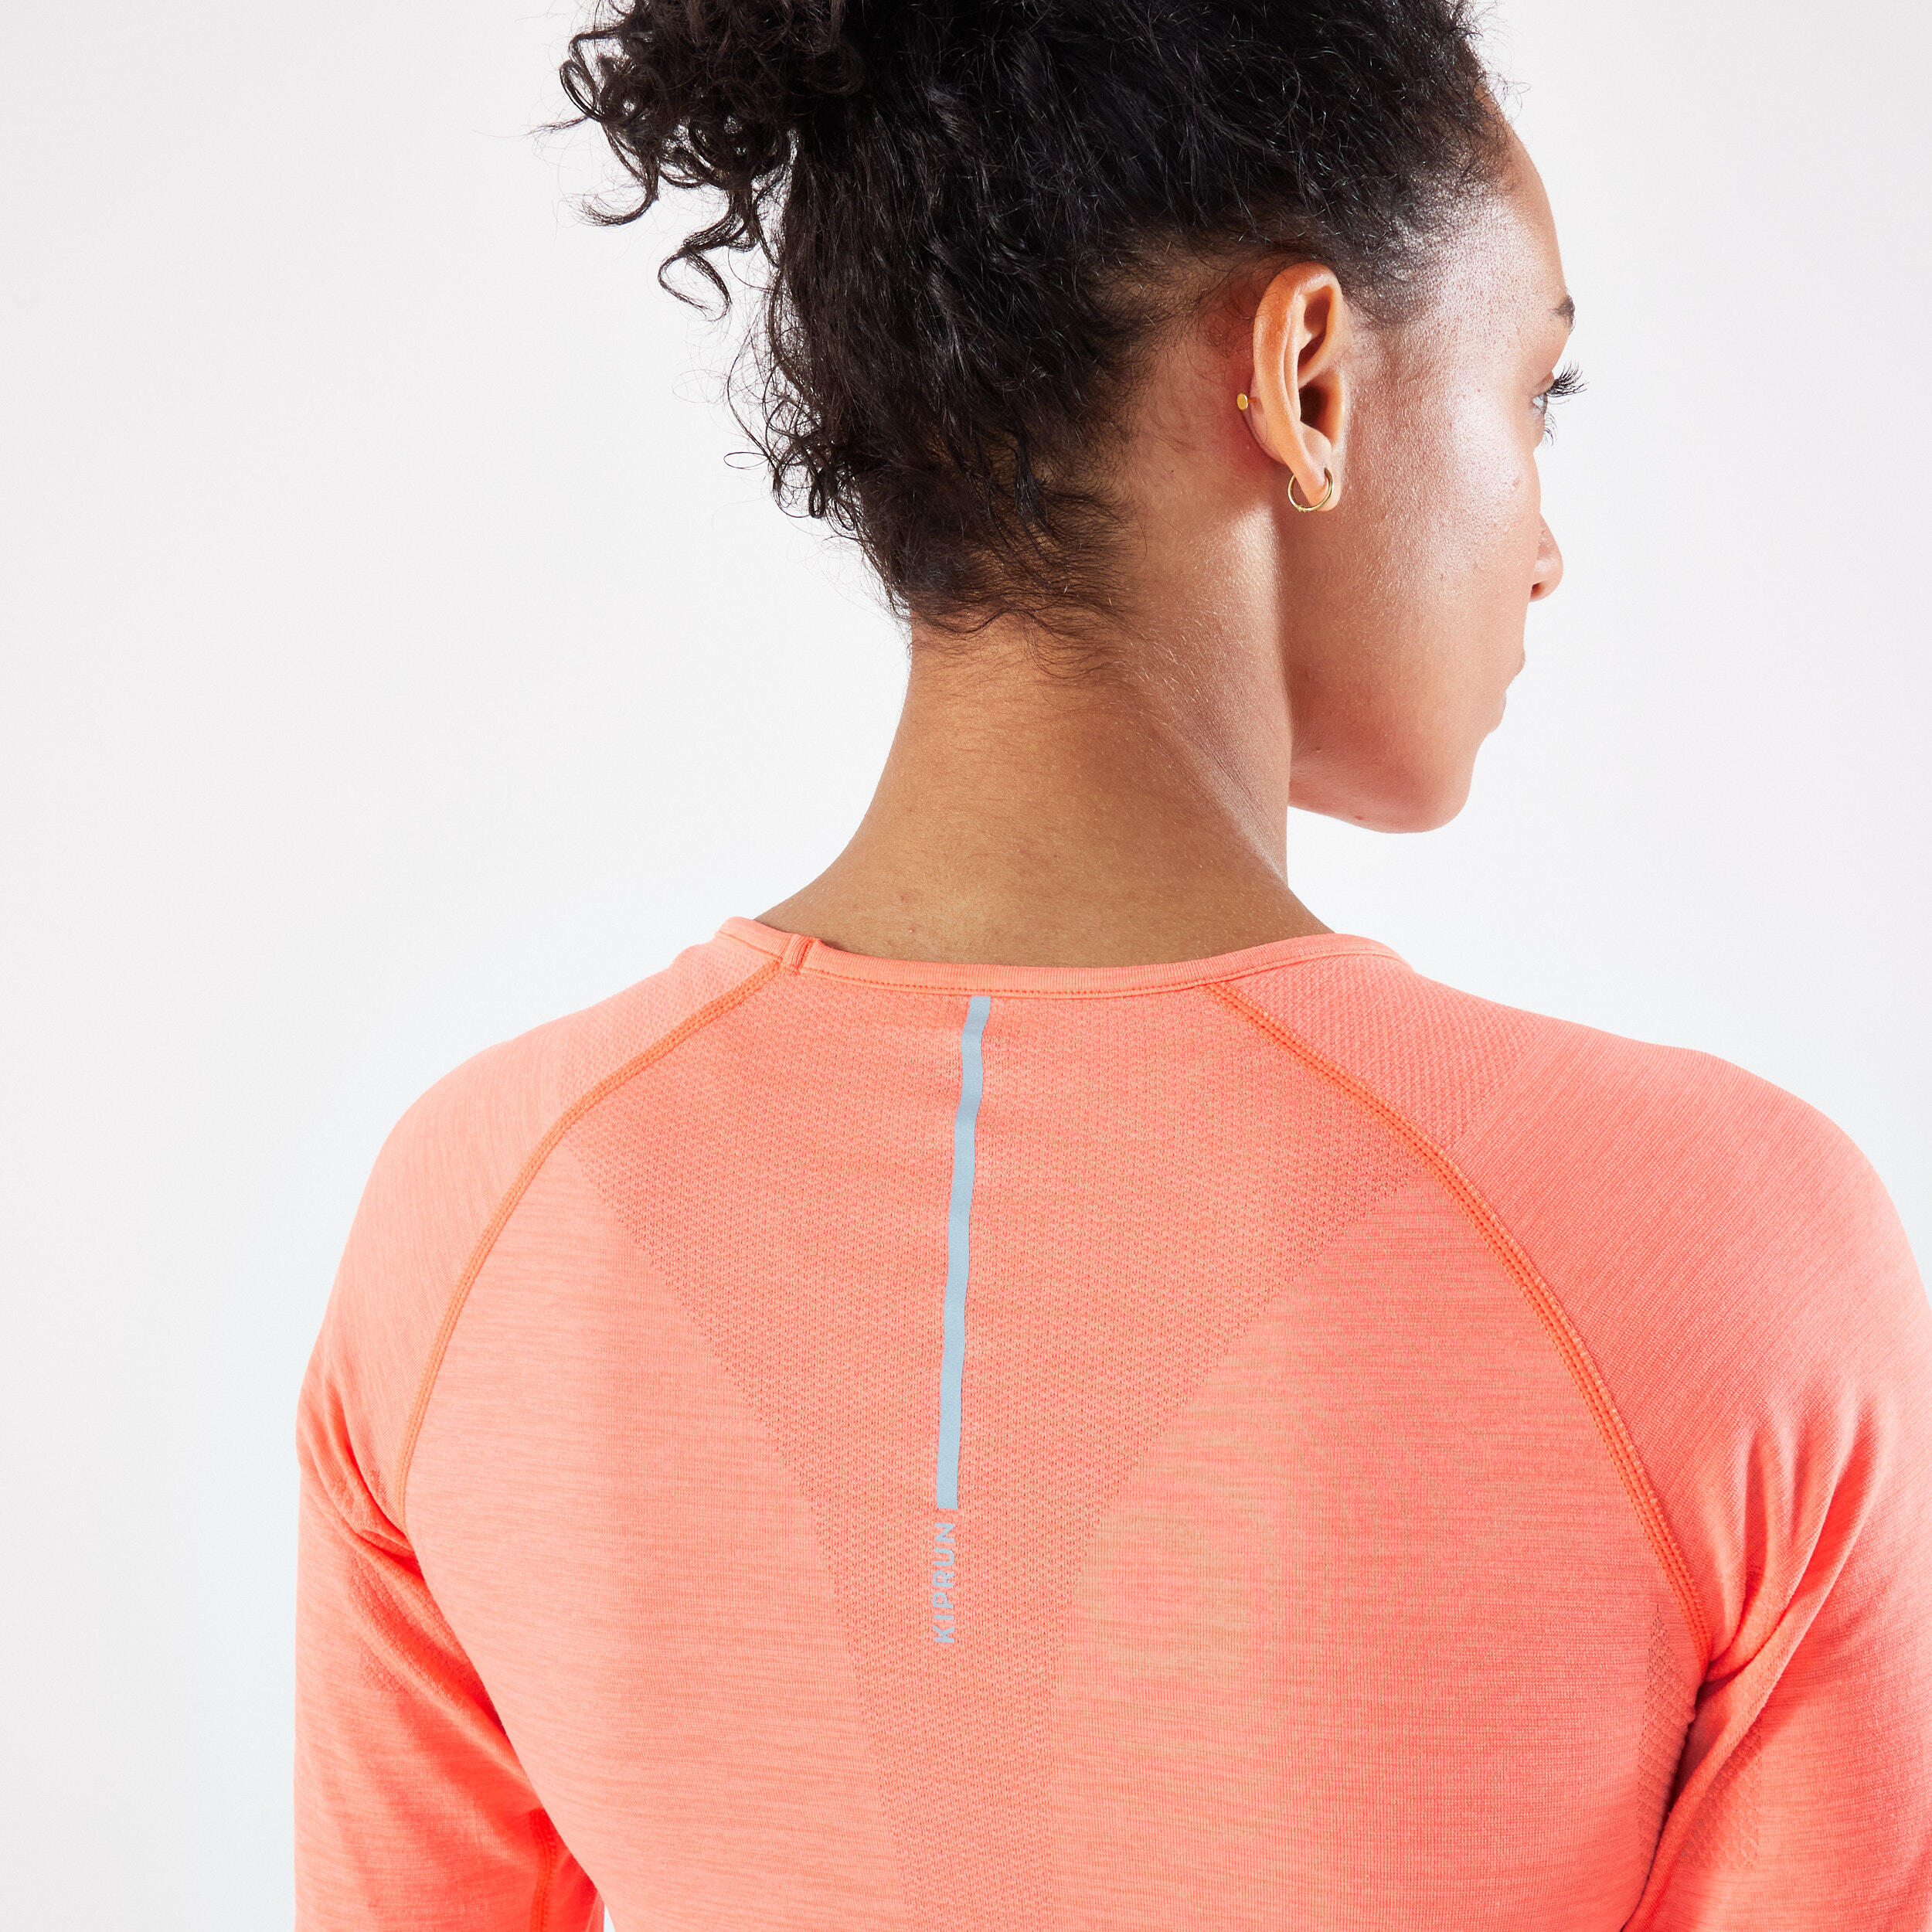 Women's Running Breathable Long-Sleeved T-Shirt - Kiprun Skincare Light Coral 6/6